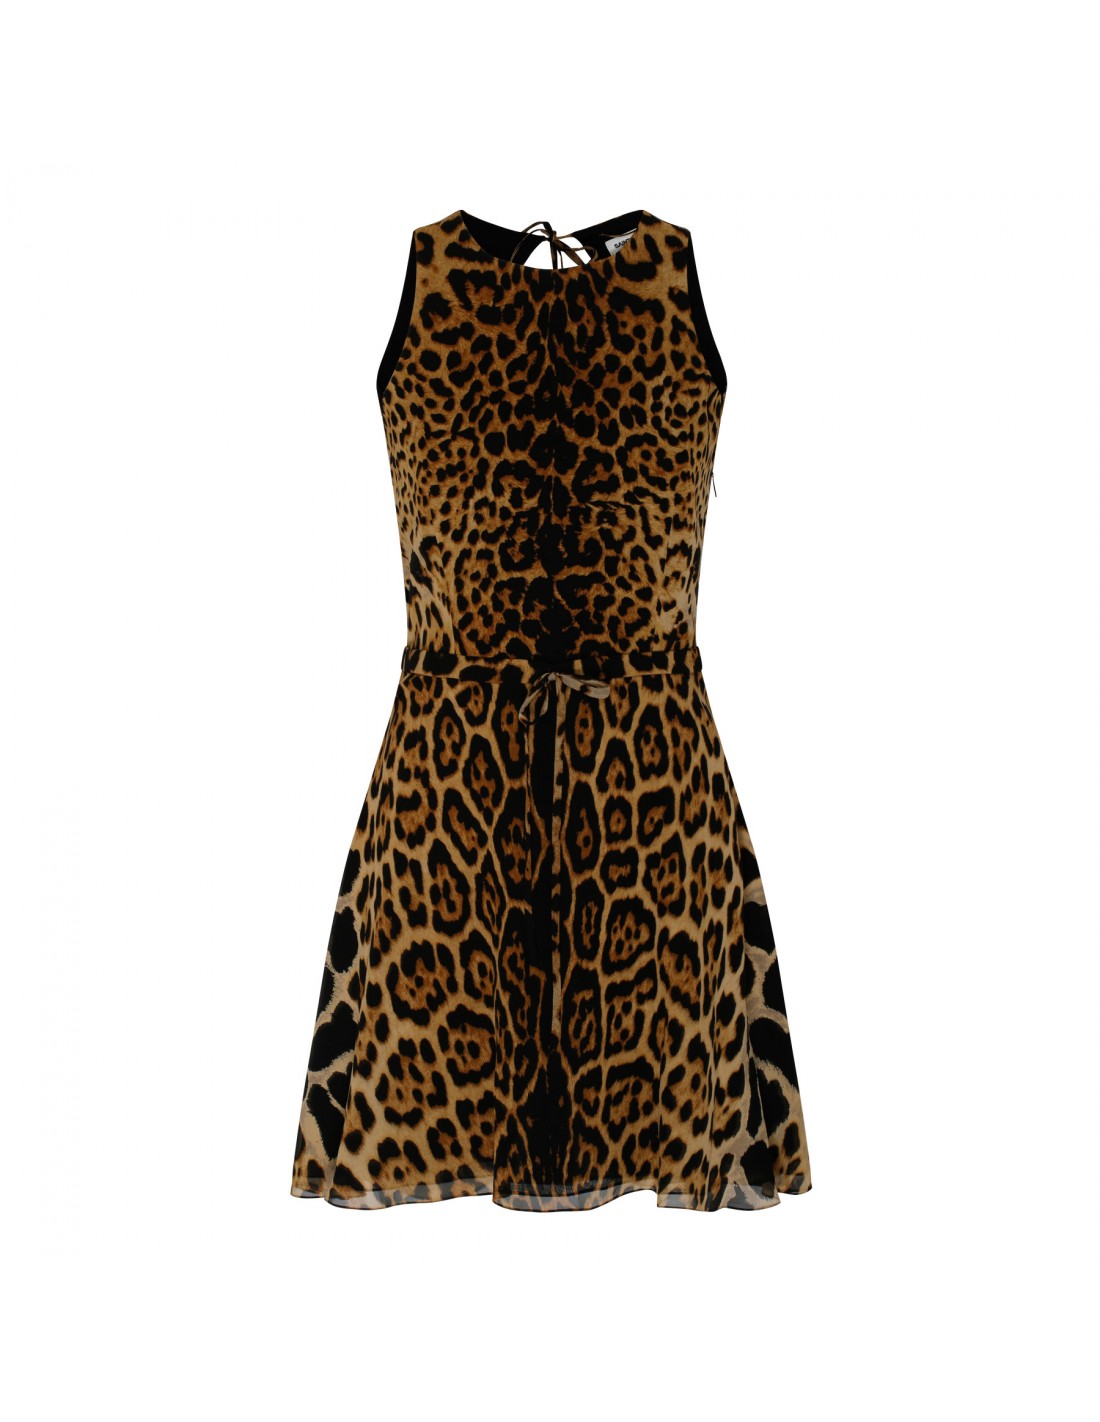 Leopard halterneck dress